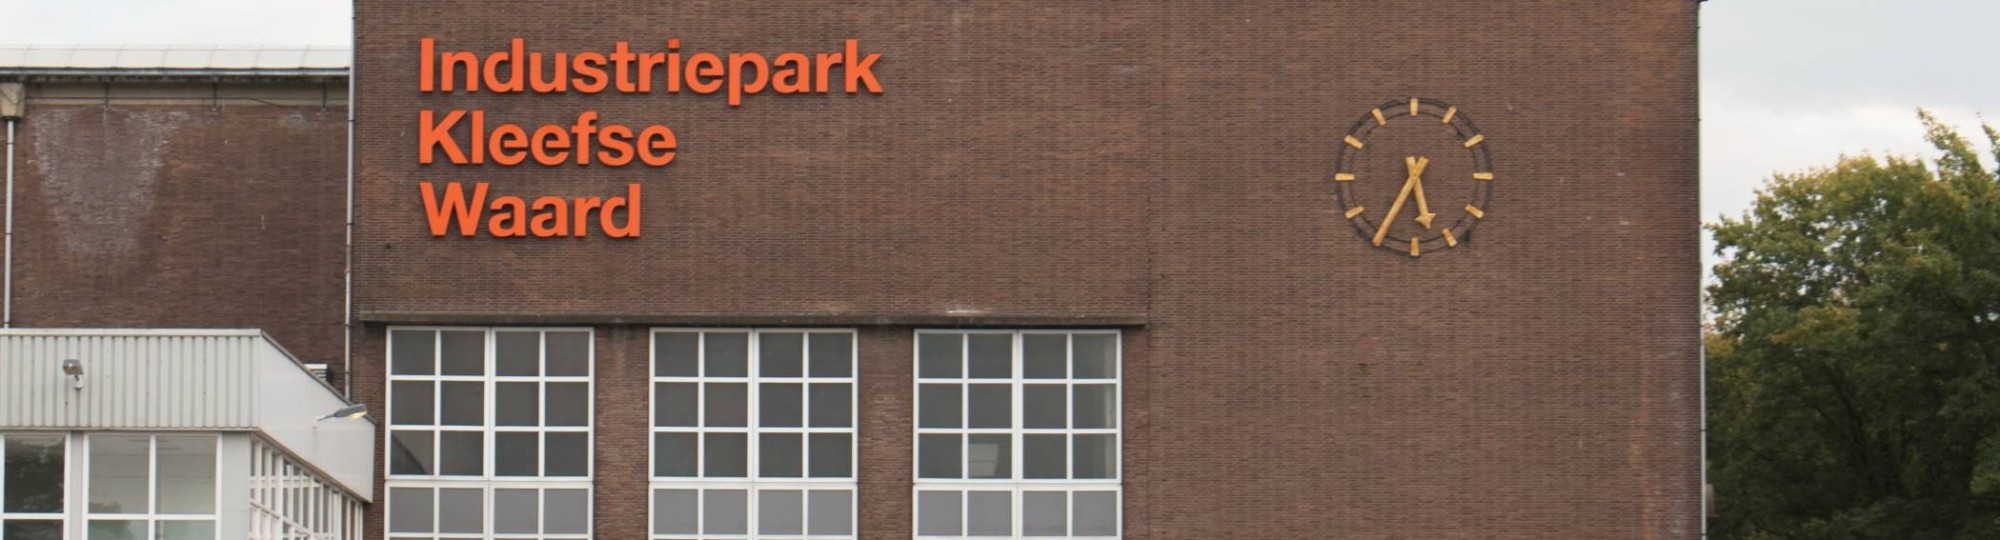 Gebouw op IPKW in Arnhem met klok en oranje letters 